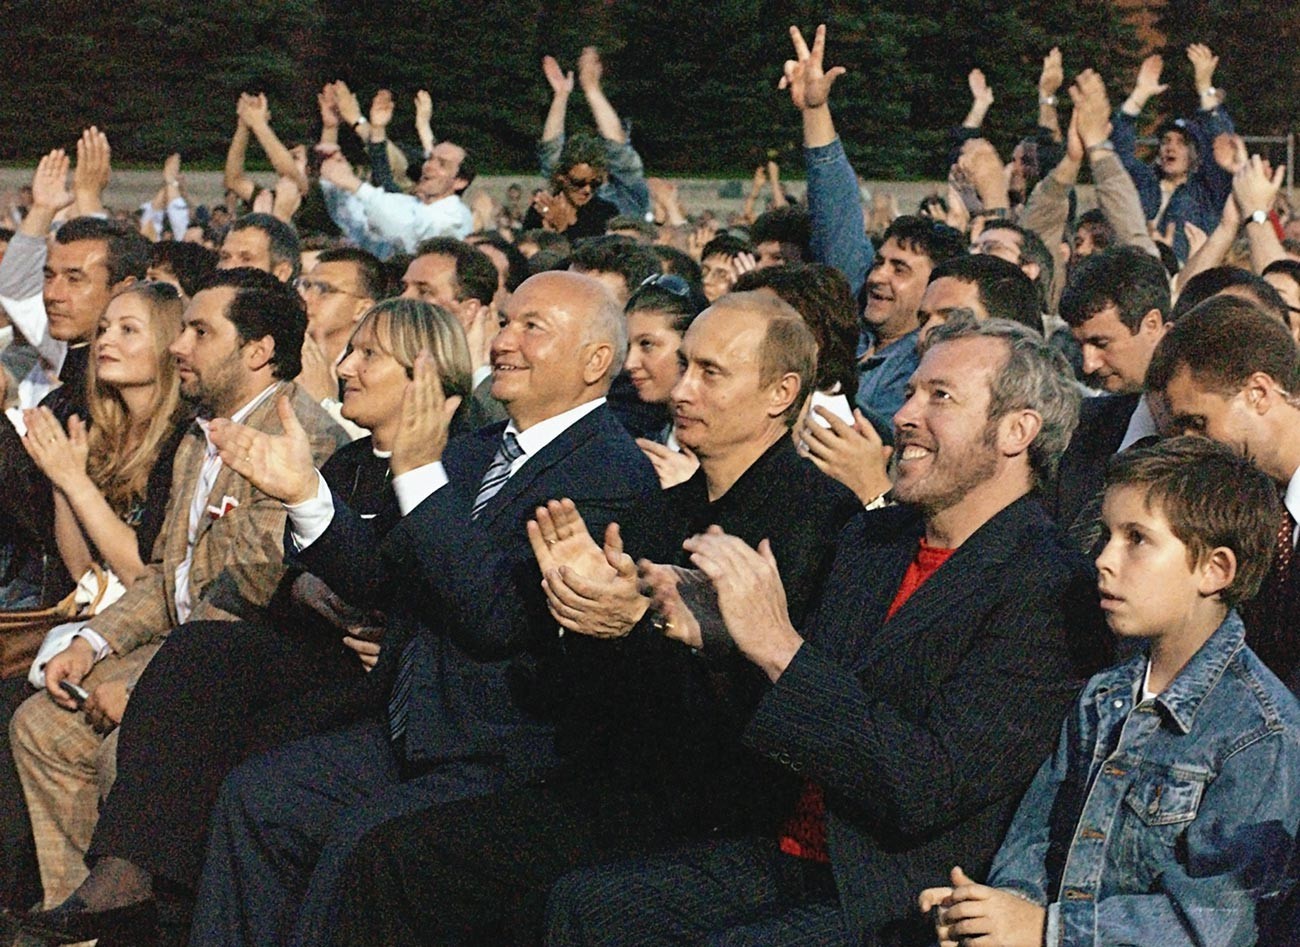 Na sliki od leve proti desni: Jurij Lužkov (takratni župan Moskve), Vladimir Putin in znani ruski rock glasbenik Andrej Makarevič na koncertu McCartneyja na Rdečem trgu
